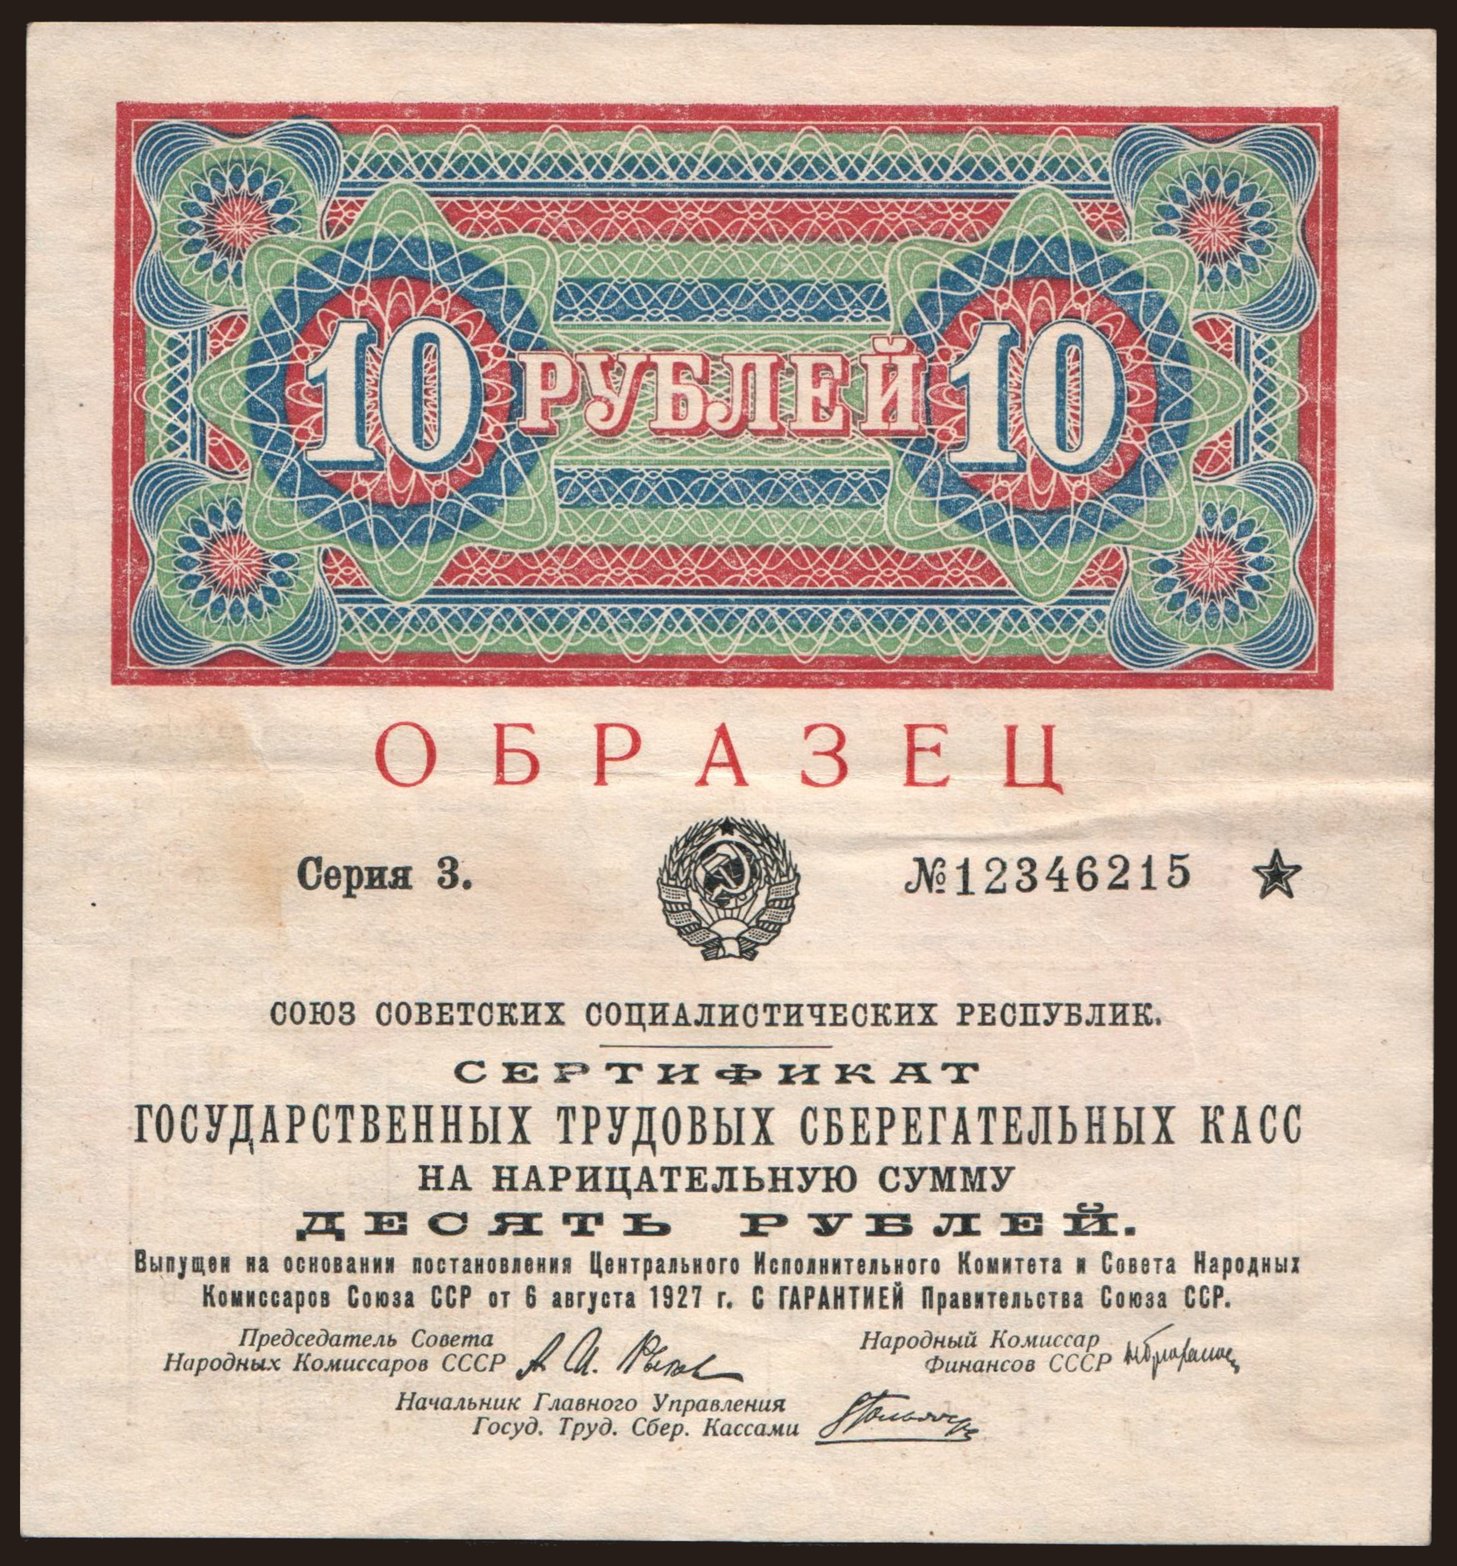 Sertifikat gosudarstvennykh trudovykh sberegatelnykh kass, 10 rubel, 1927, obrazec